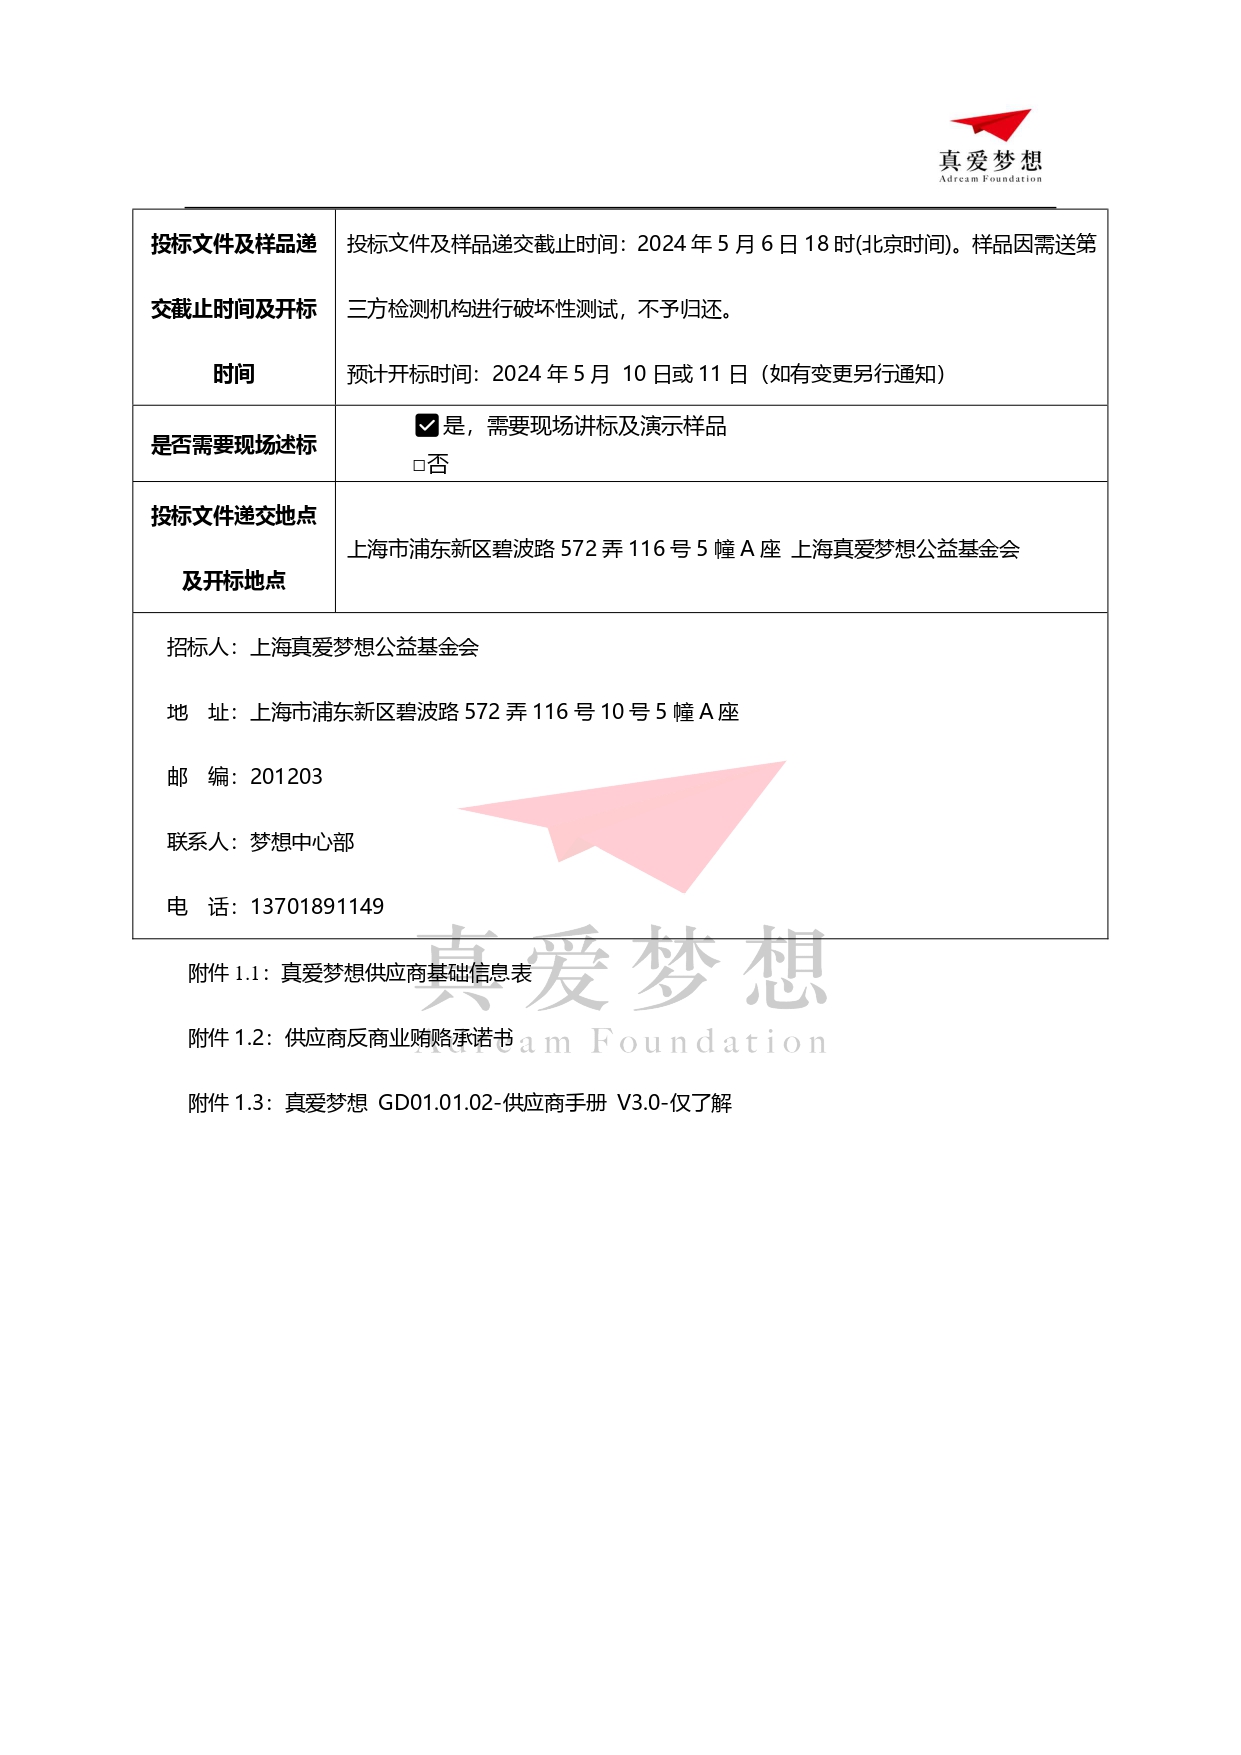 2024年上海真爱梦想公益基金会运动梦想公益计划配套运动器材采购招标公告_page-0004